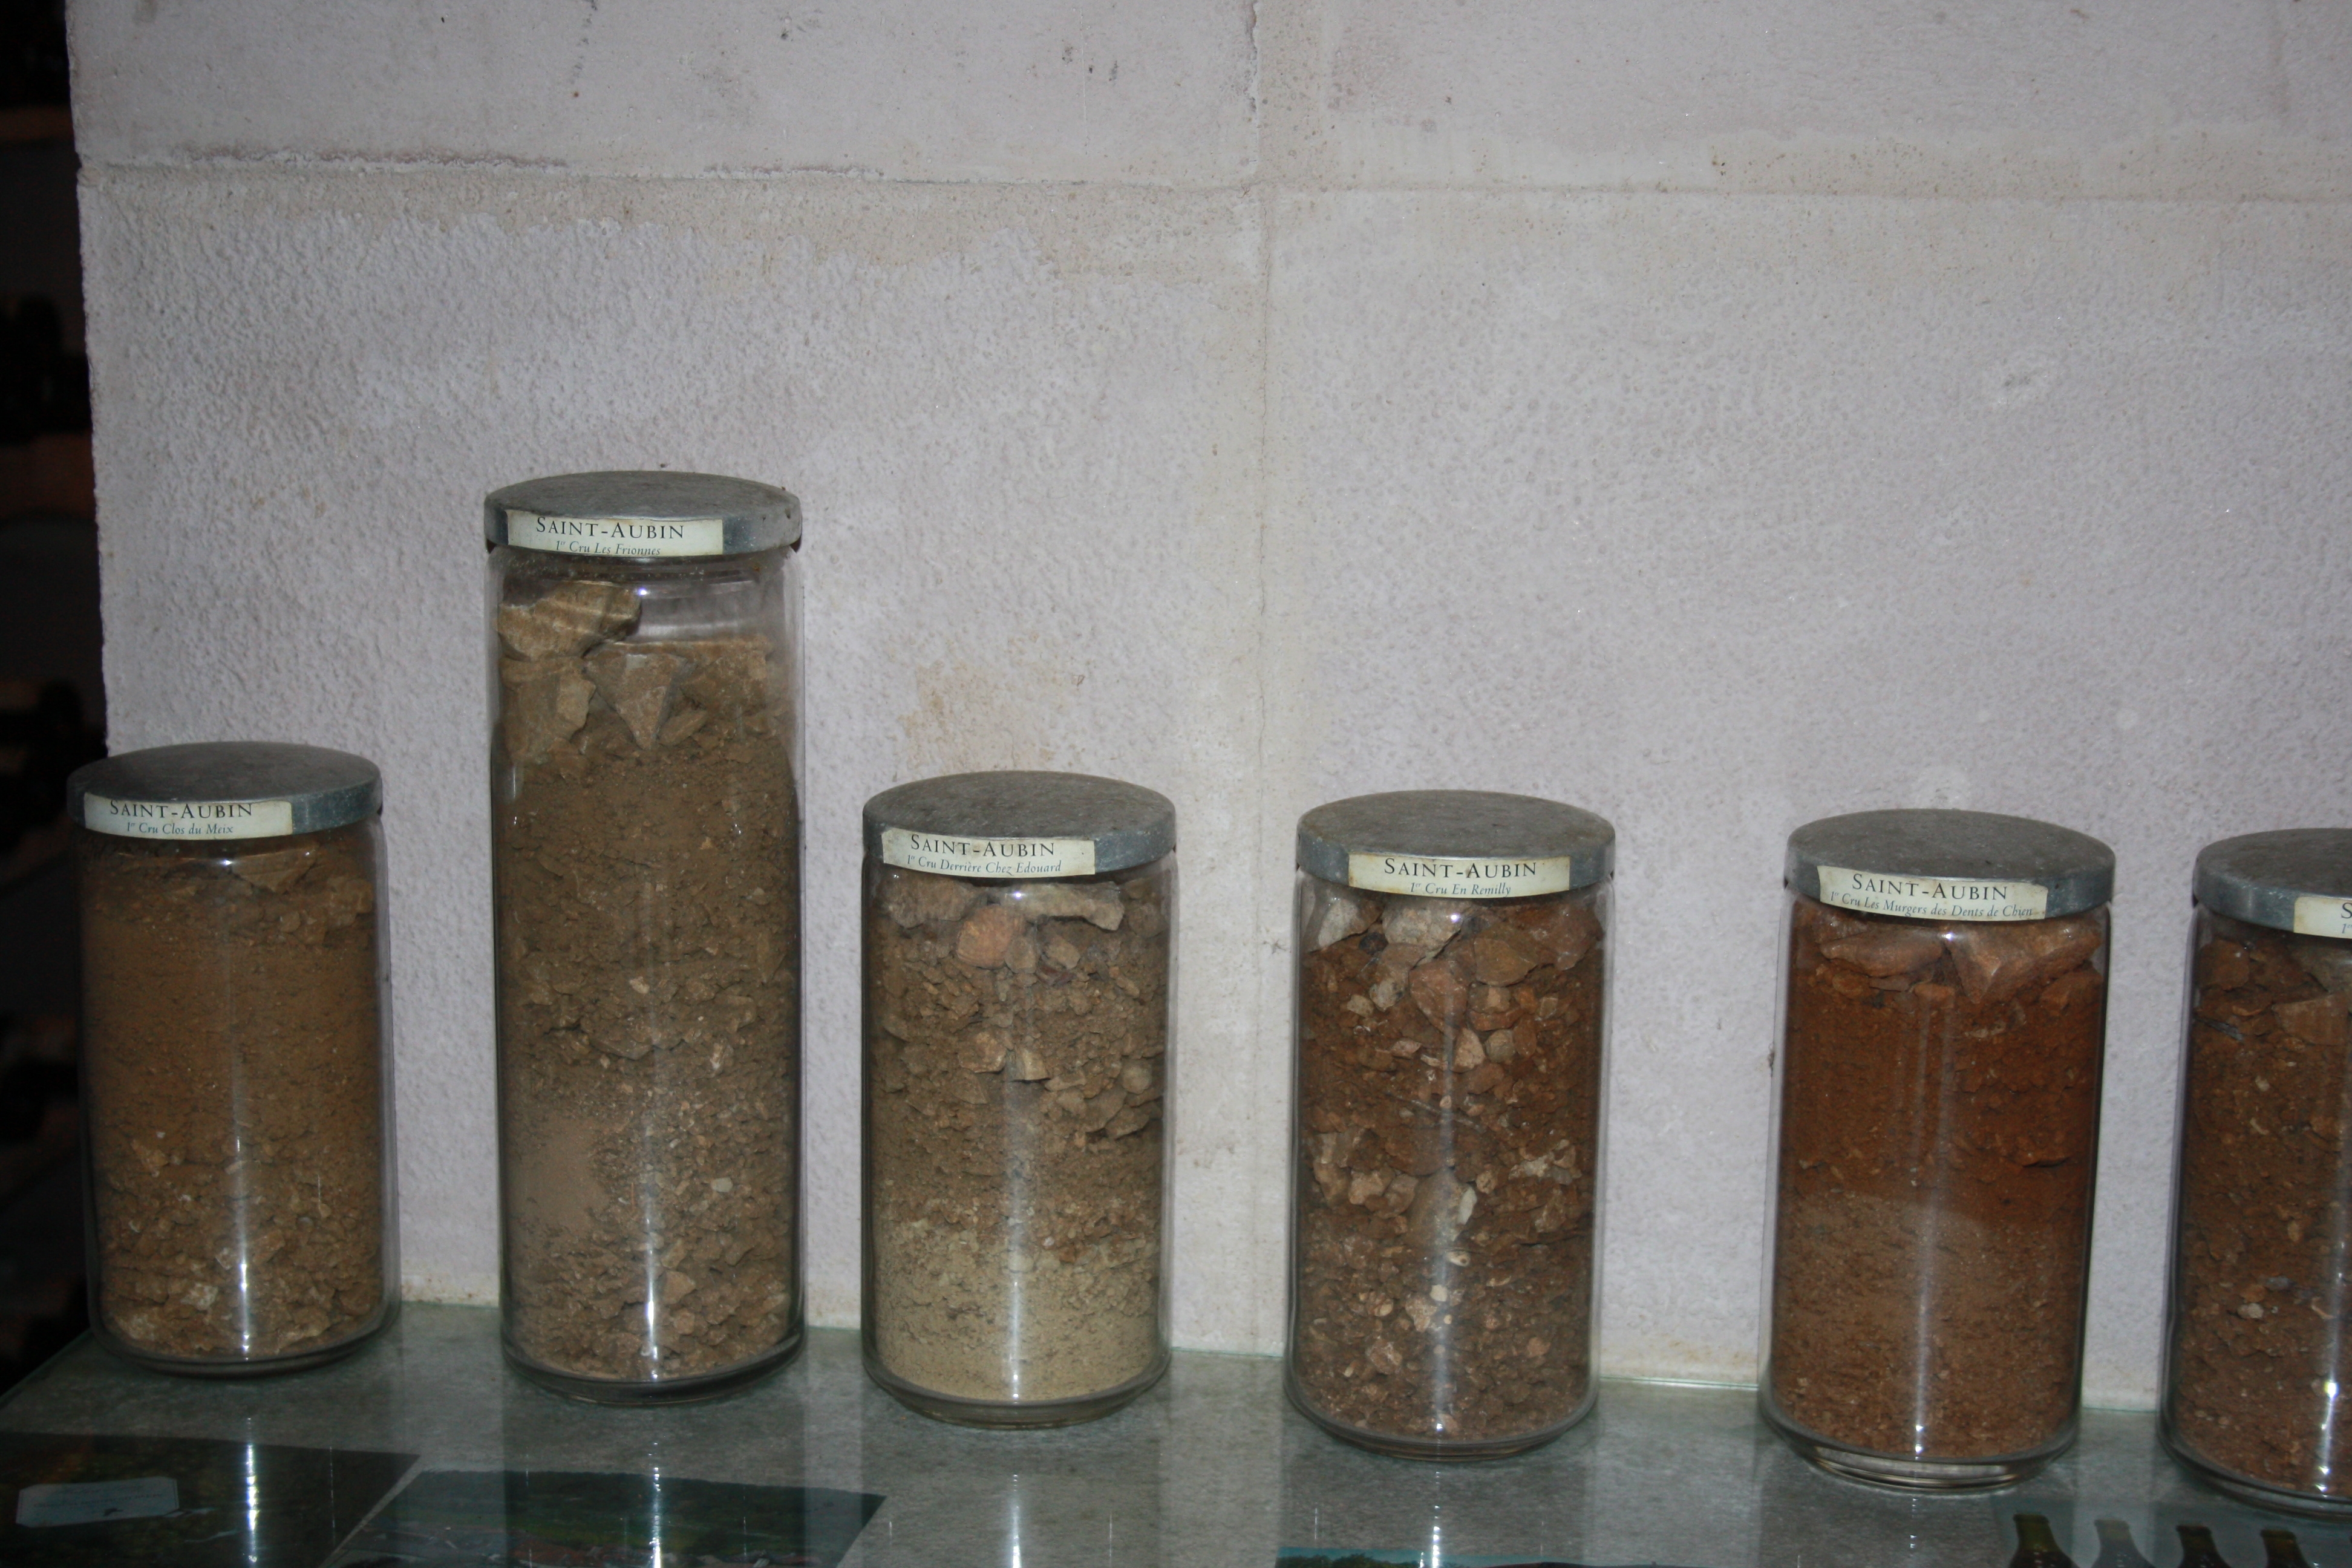 Soil samples at Lamy